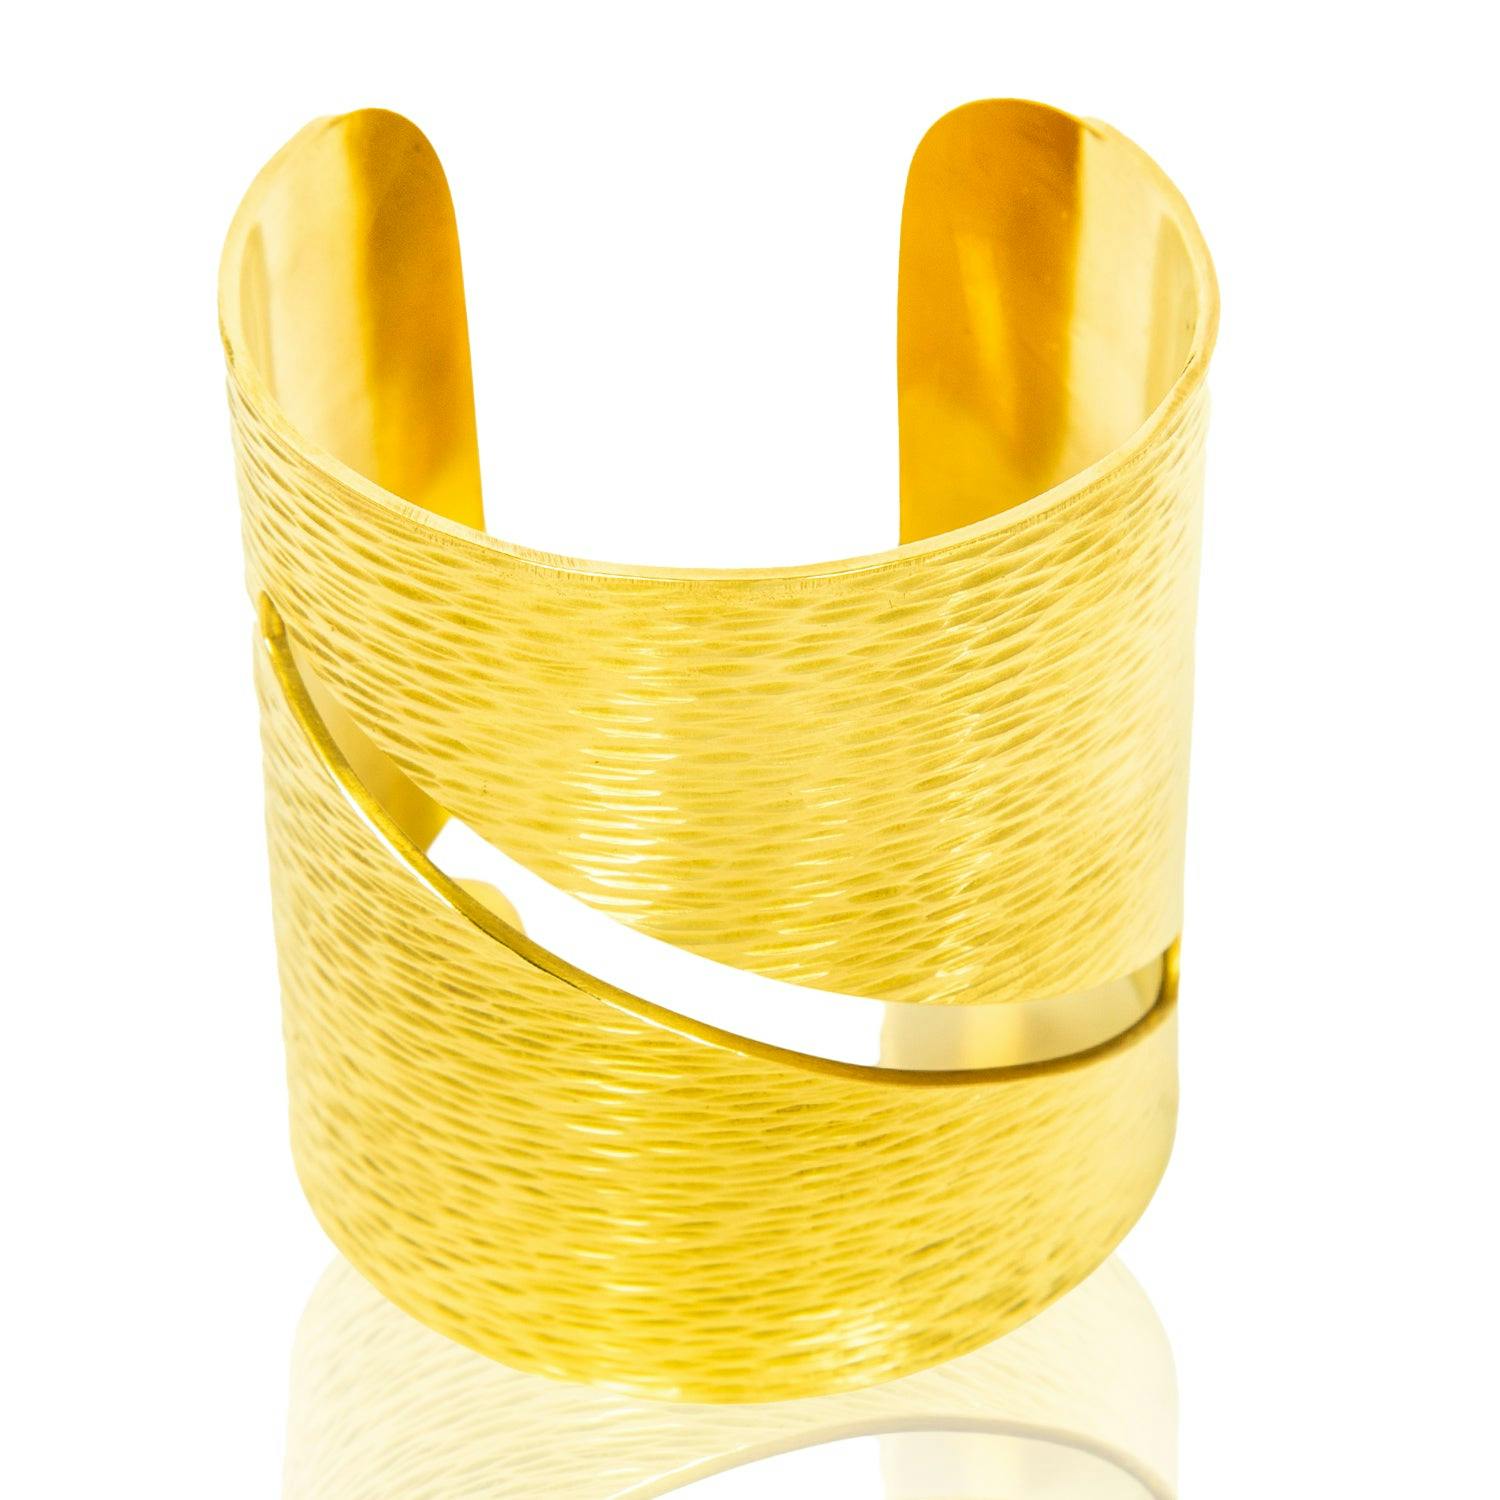 Mirembe Bracelet, a product by Adele Dejak